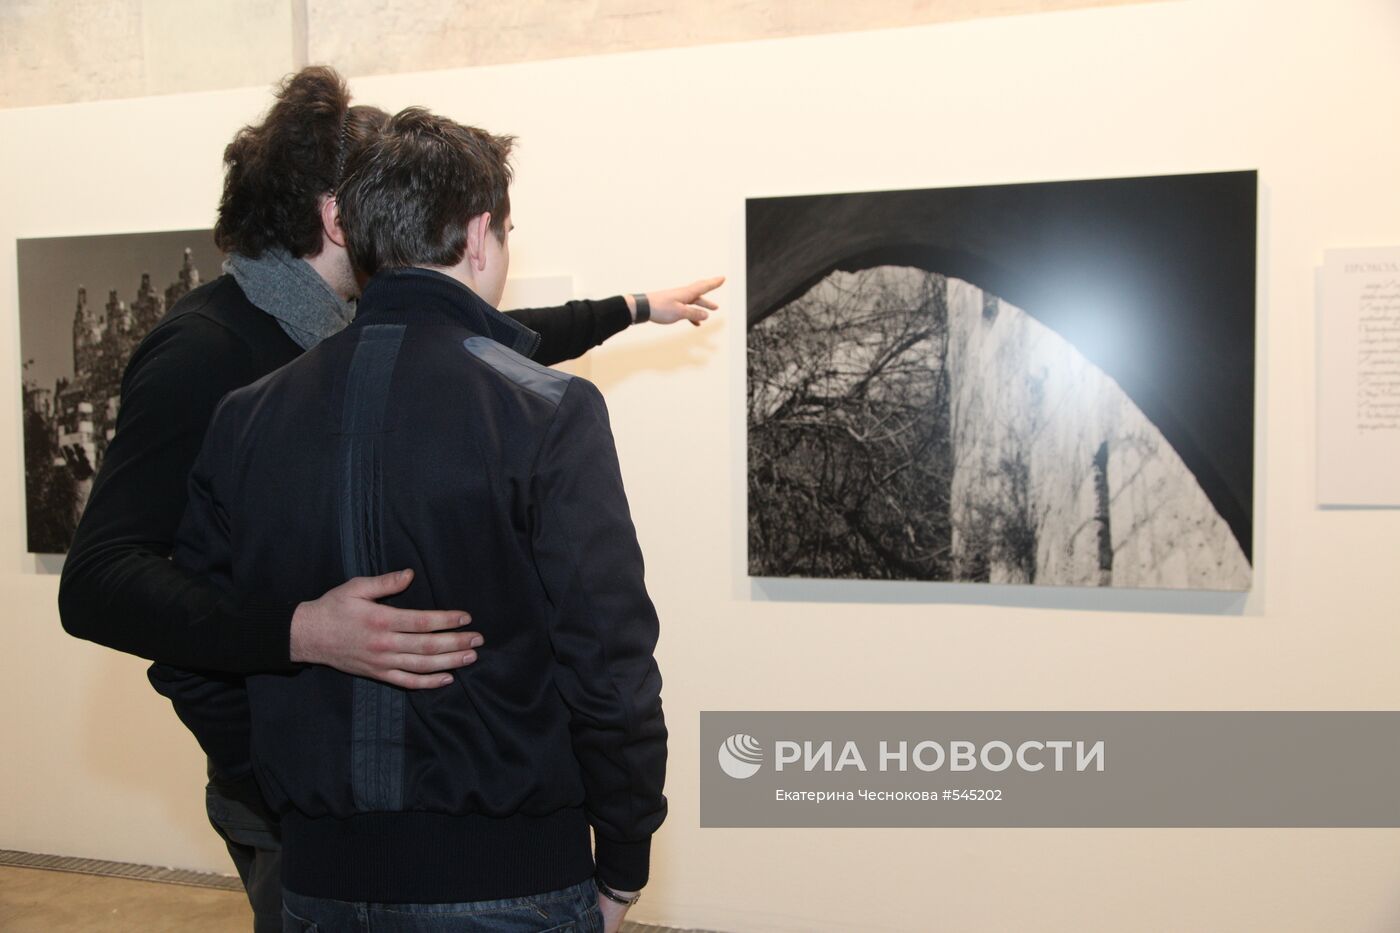 Открытие выставки фотографа Михаила Розанова "Служение"